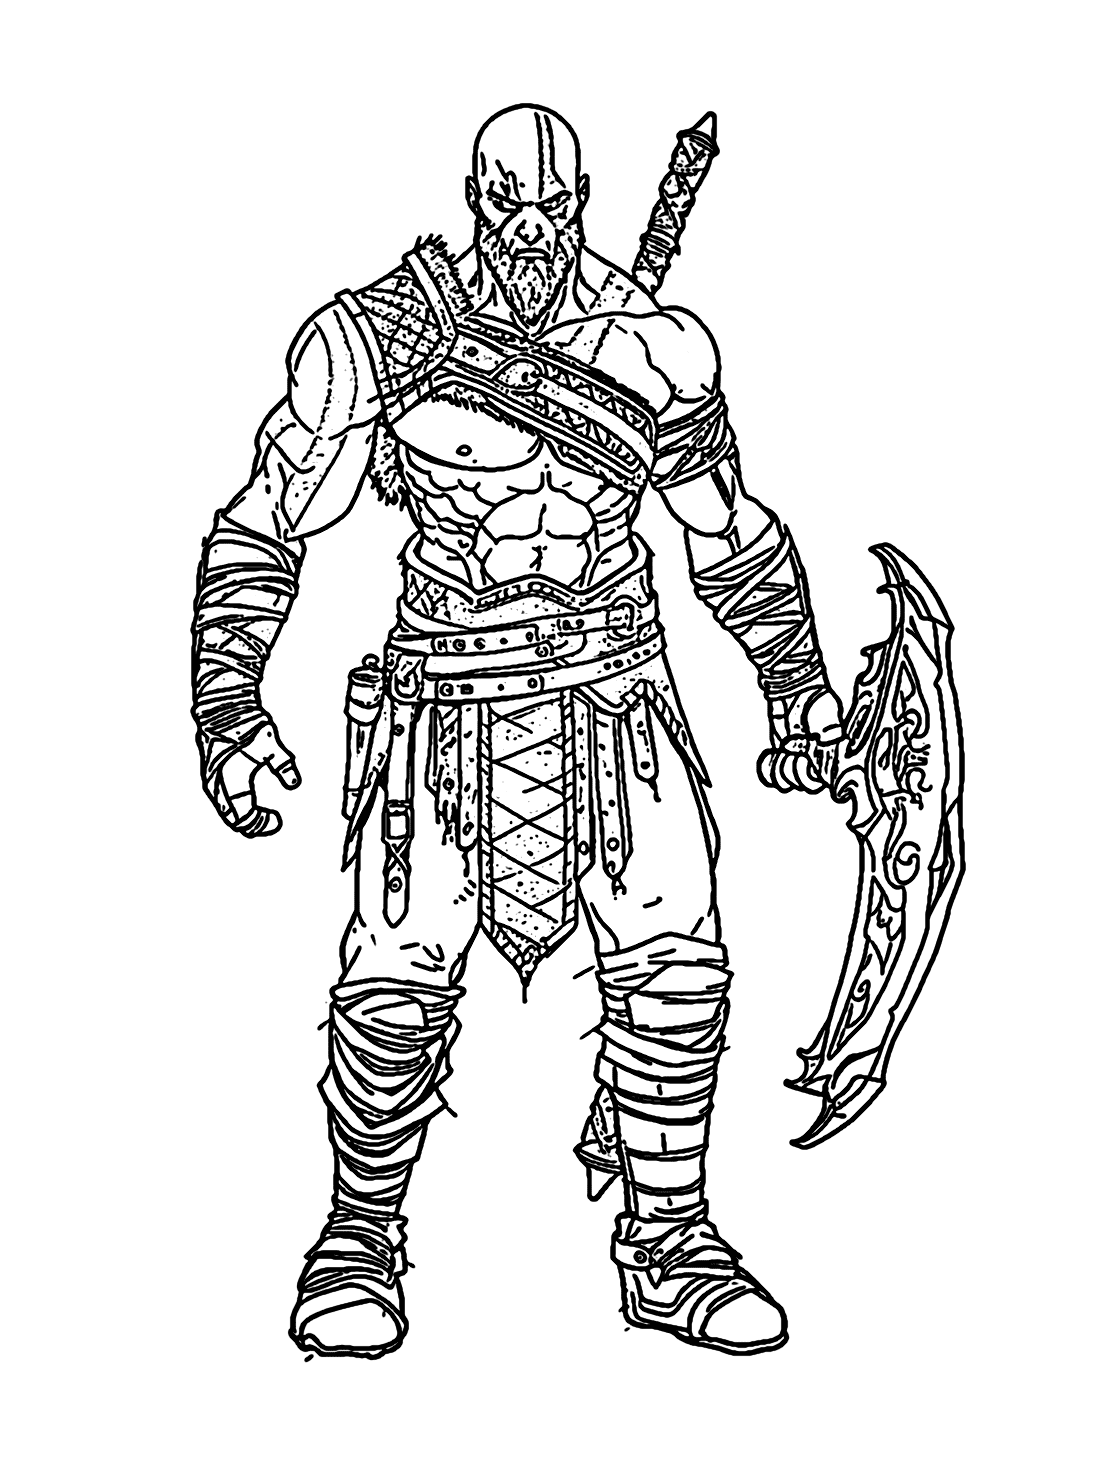 Kratos art